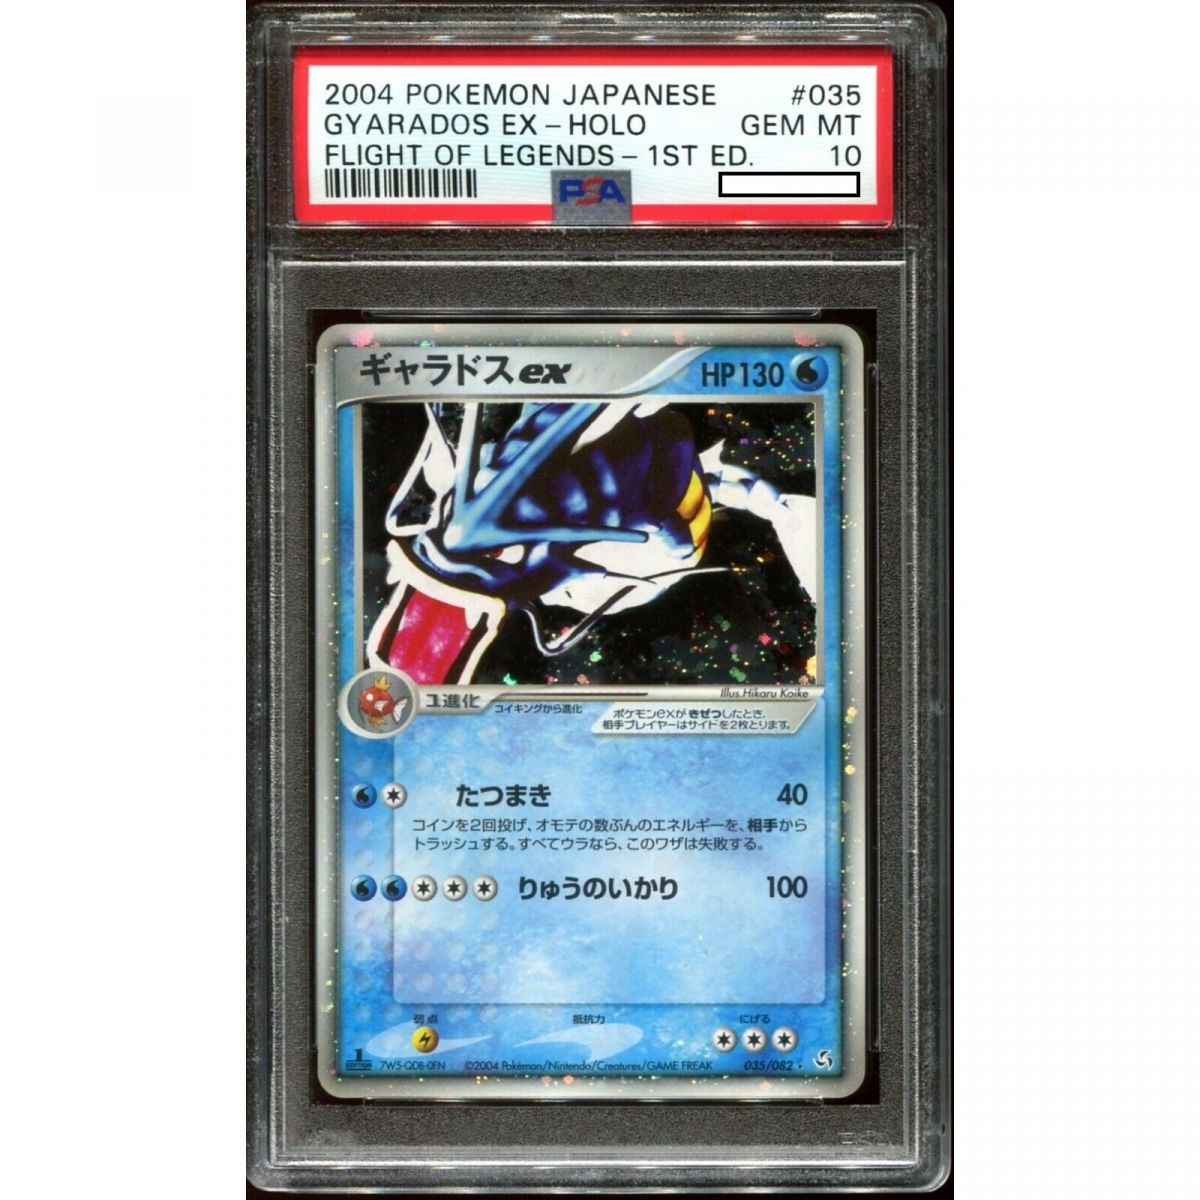 Pokémon – Graded Card – Gyarados Ex Flight Of Legends Japanisch 2004 1. Auflage [PSA 10 – Gem Mint]